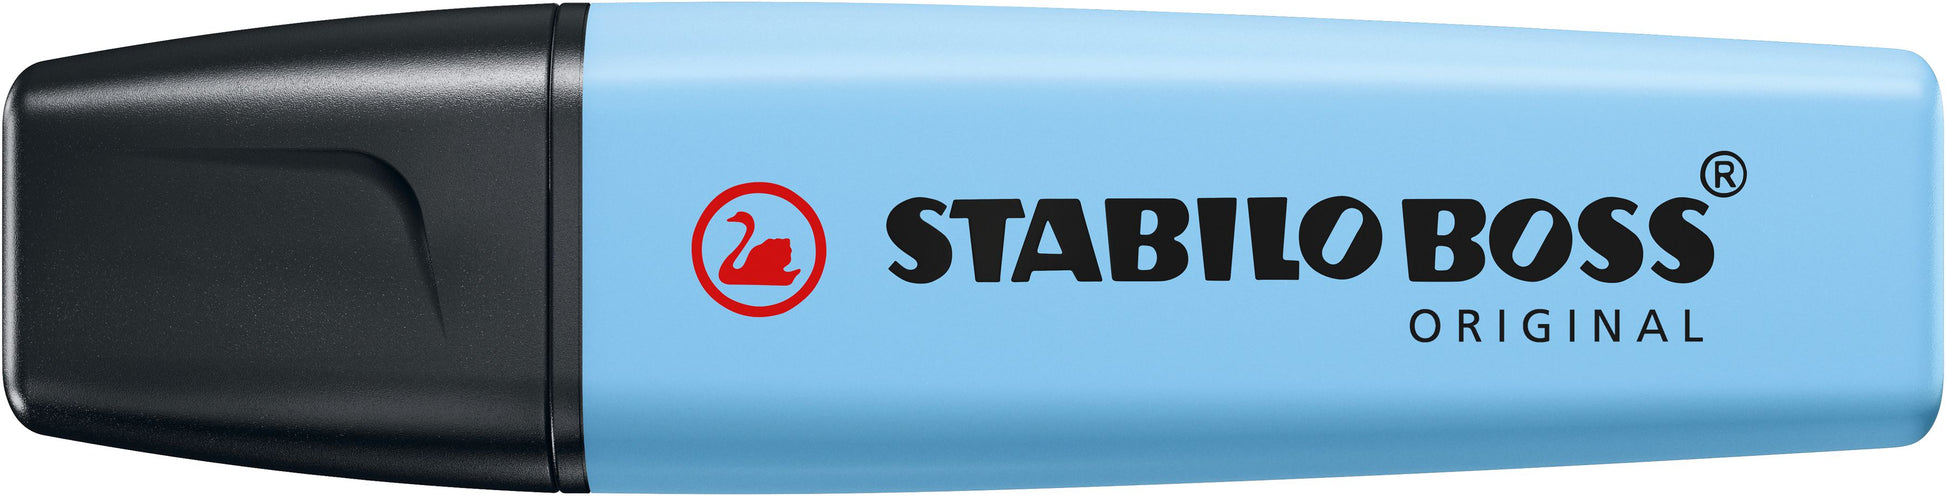 Stabilo Boss Original Highlighter Pastel Blue